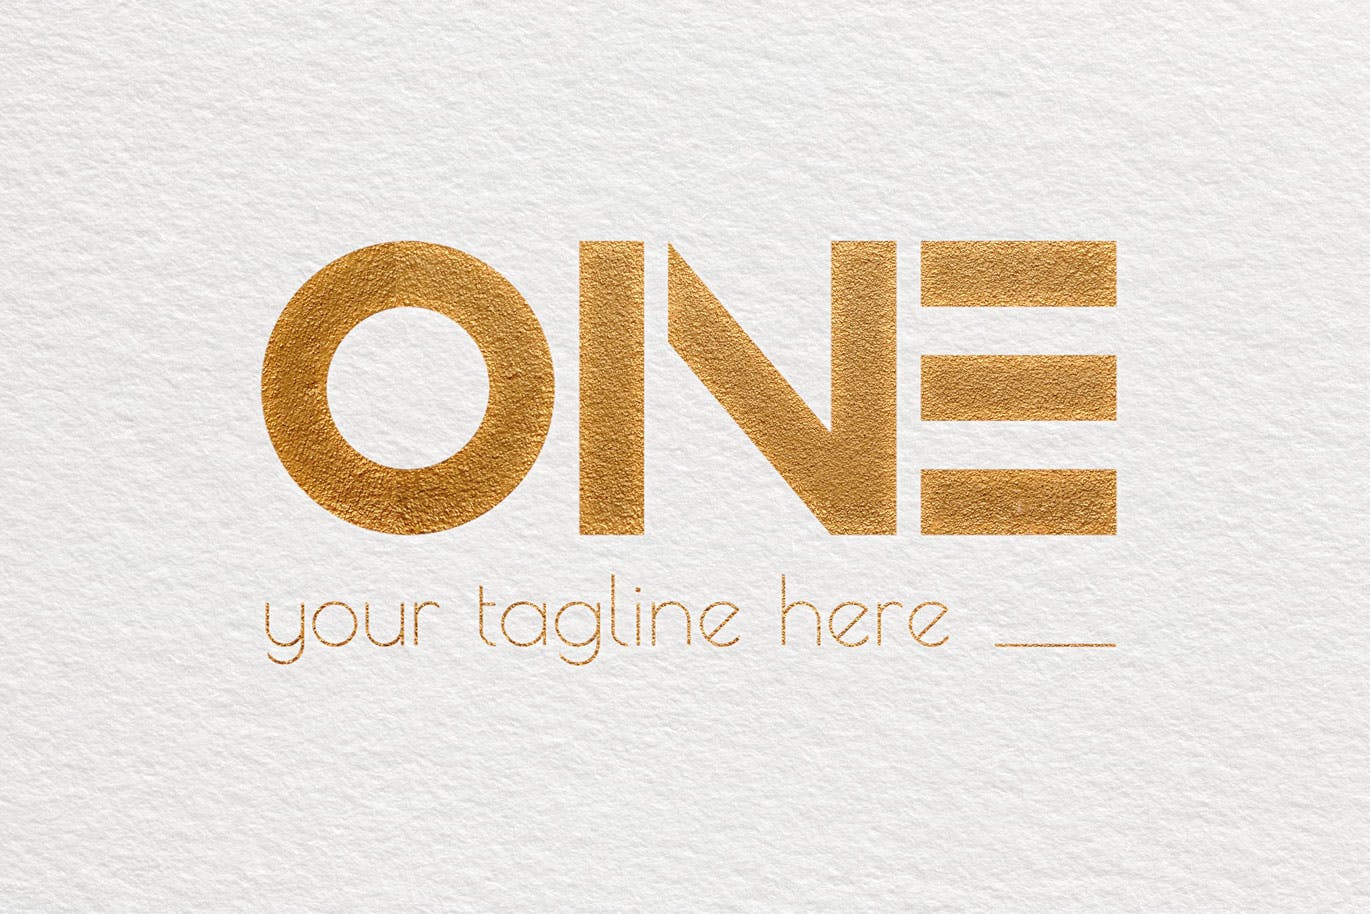 创意ONE文字Logo设计蚂蚁素材精选模板 One Modern Logo Template插图(3)